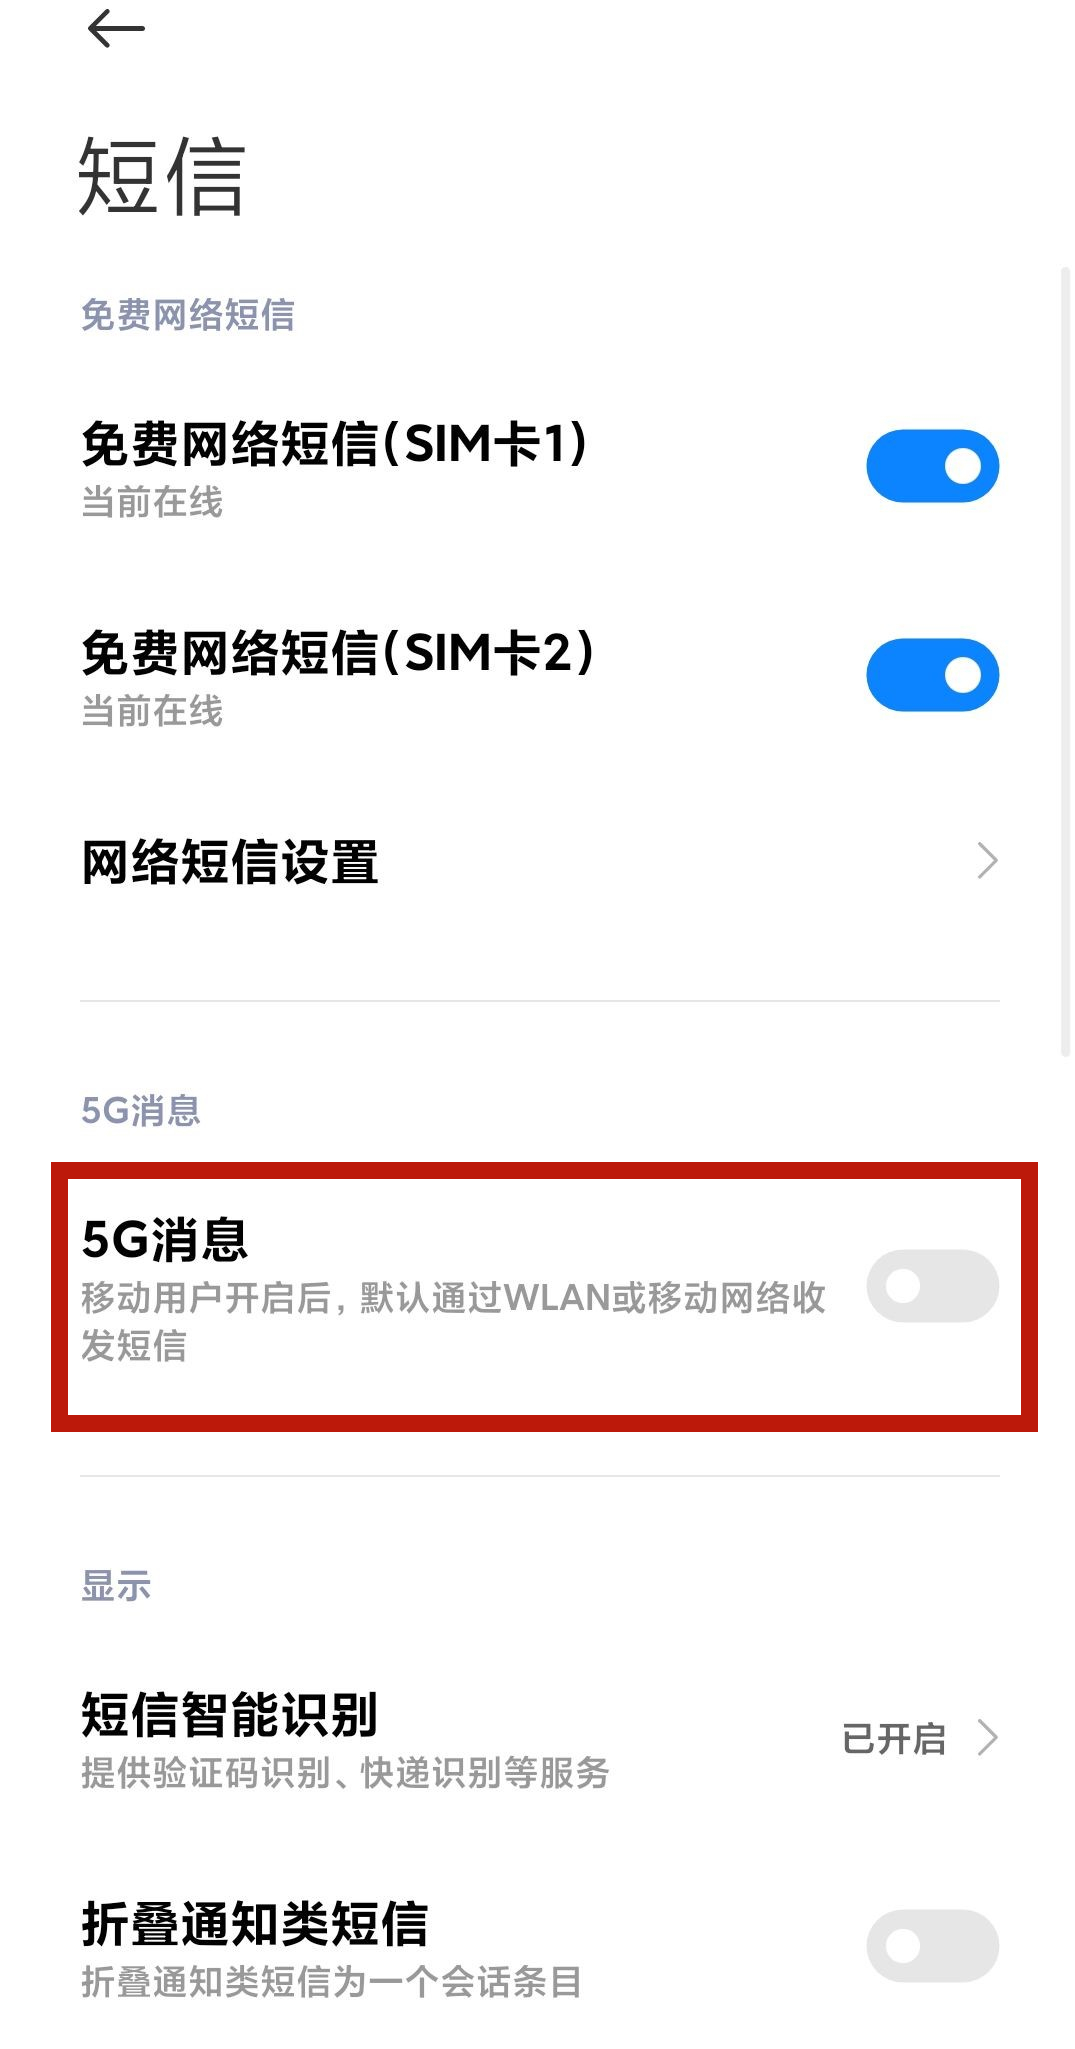 5G消息来了 小米手机已支持：取代传统短信